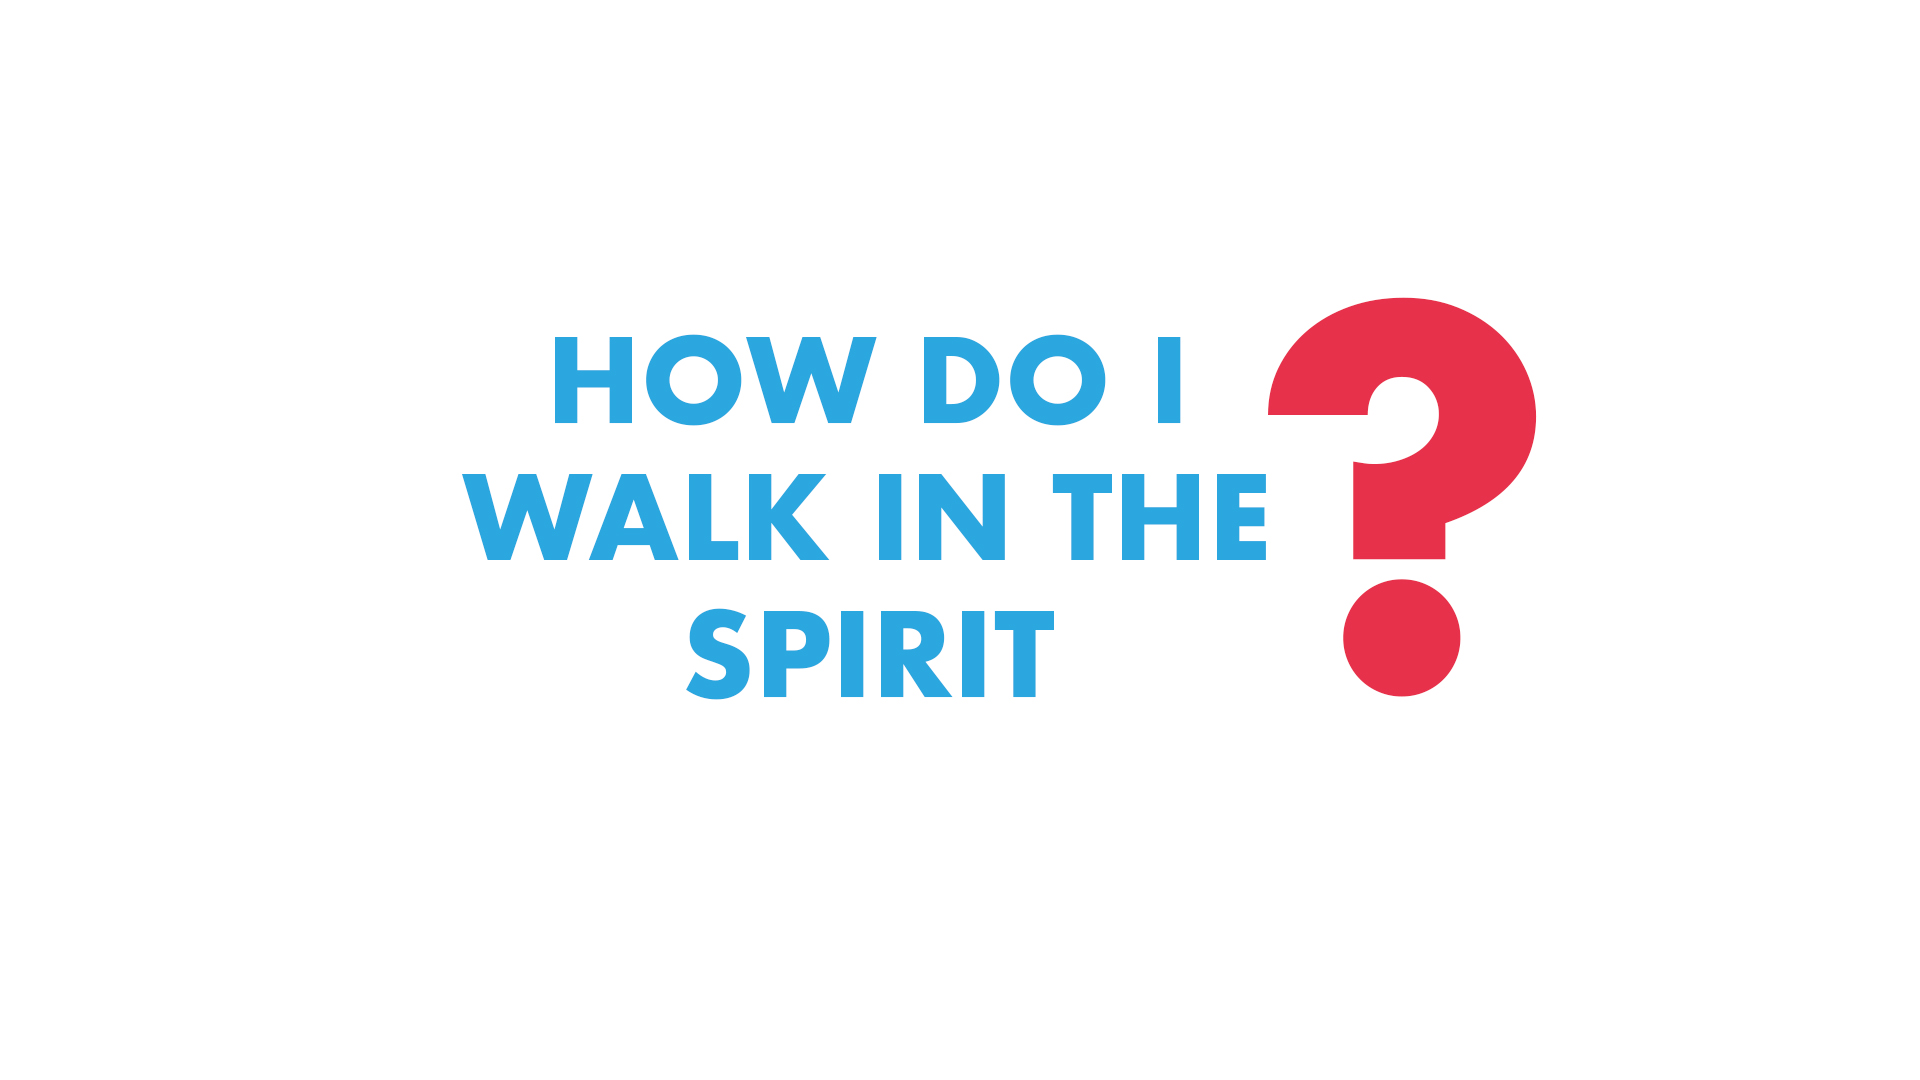 How do I Walk in the Spirit?